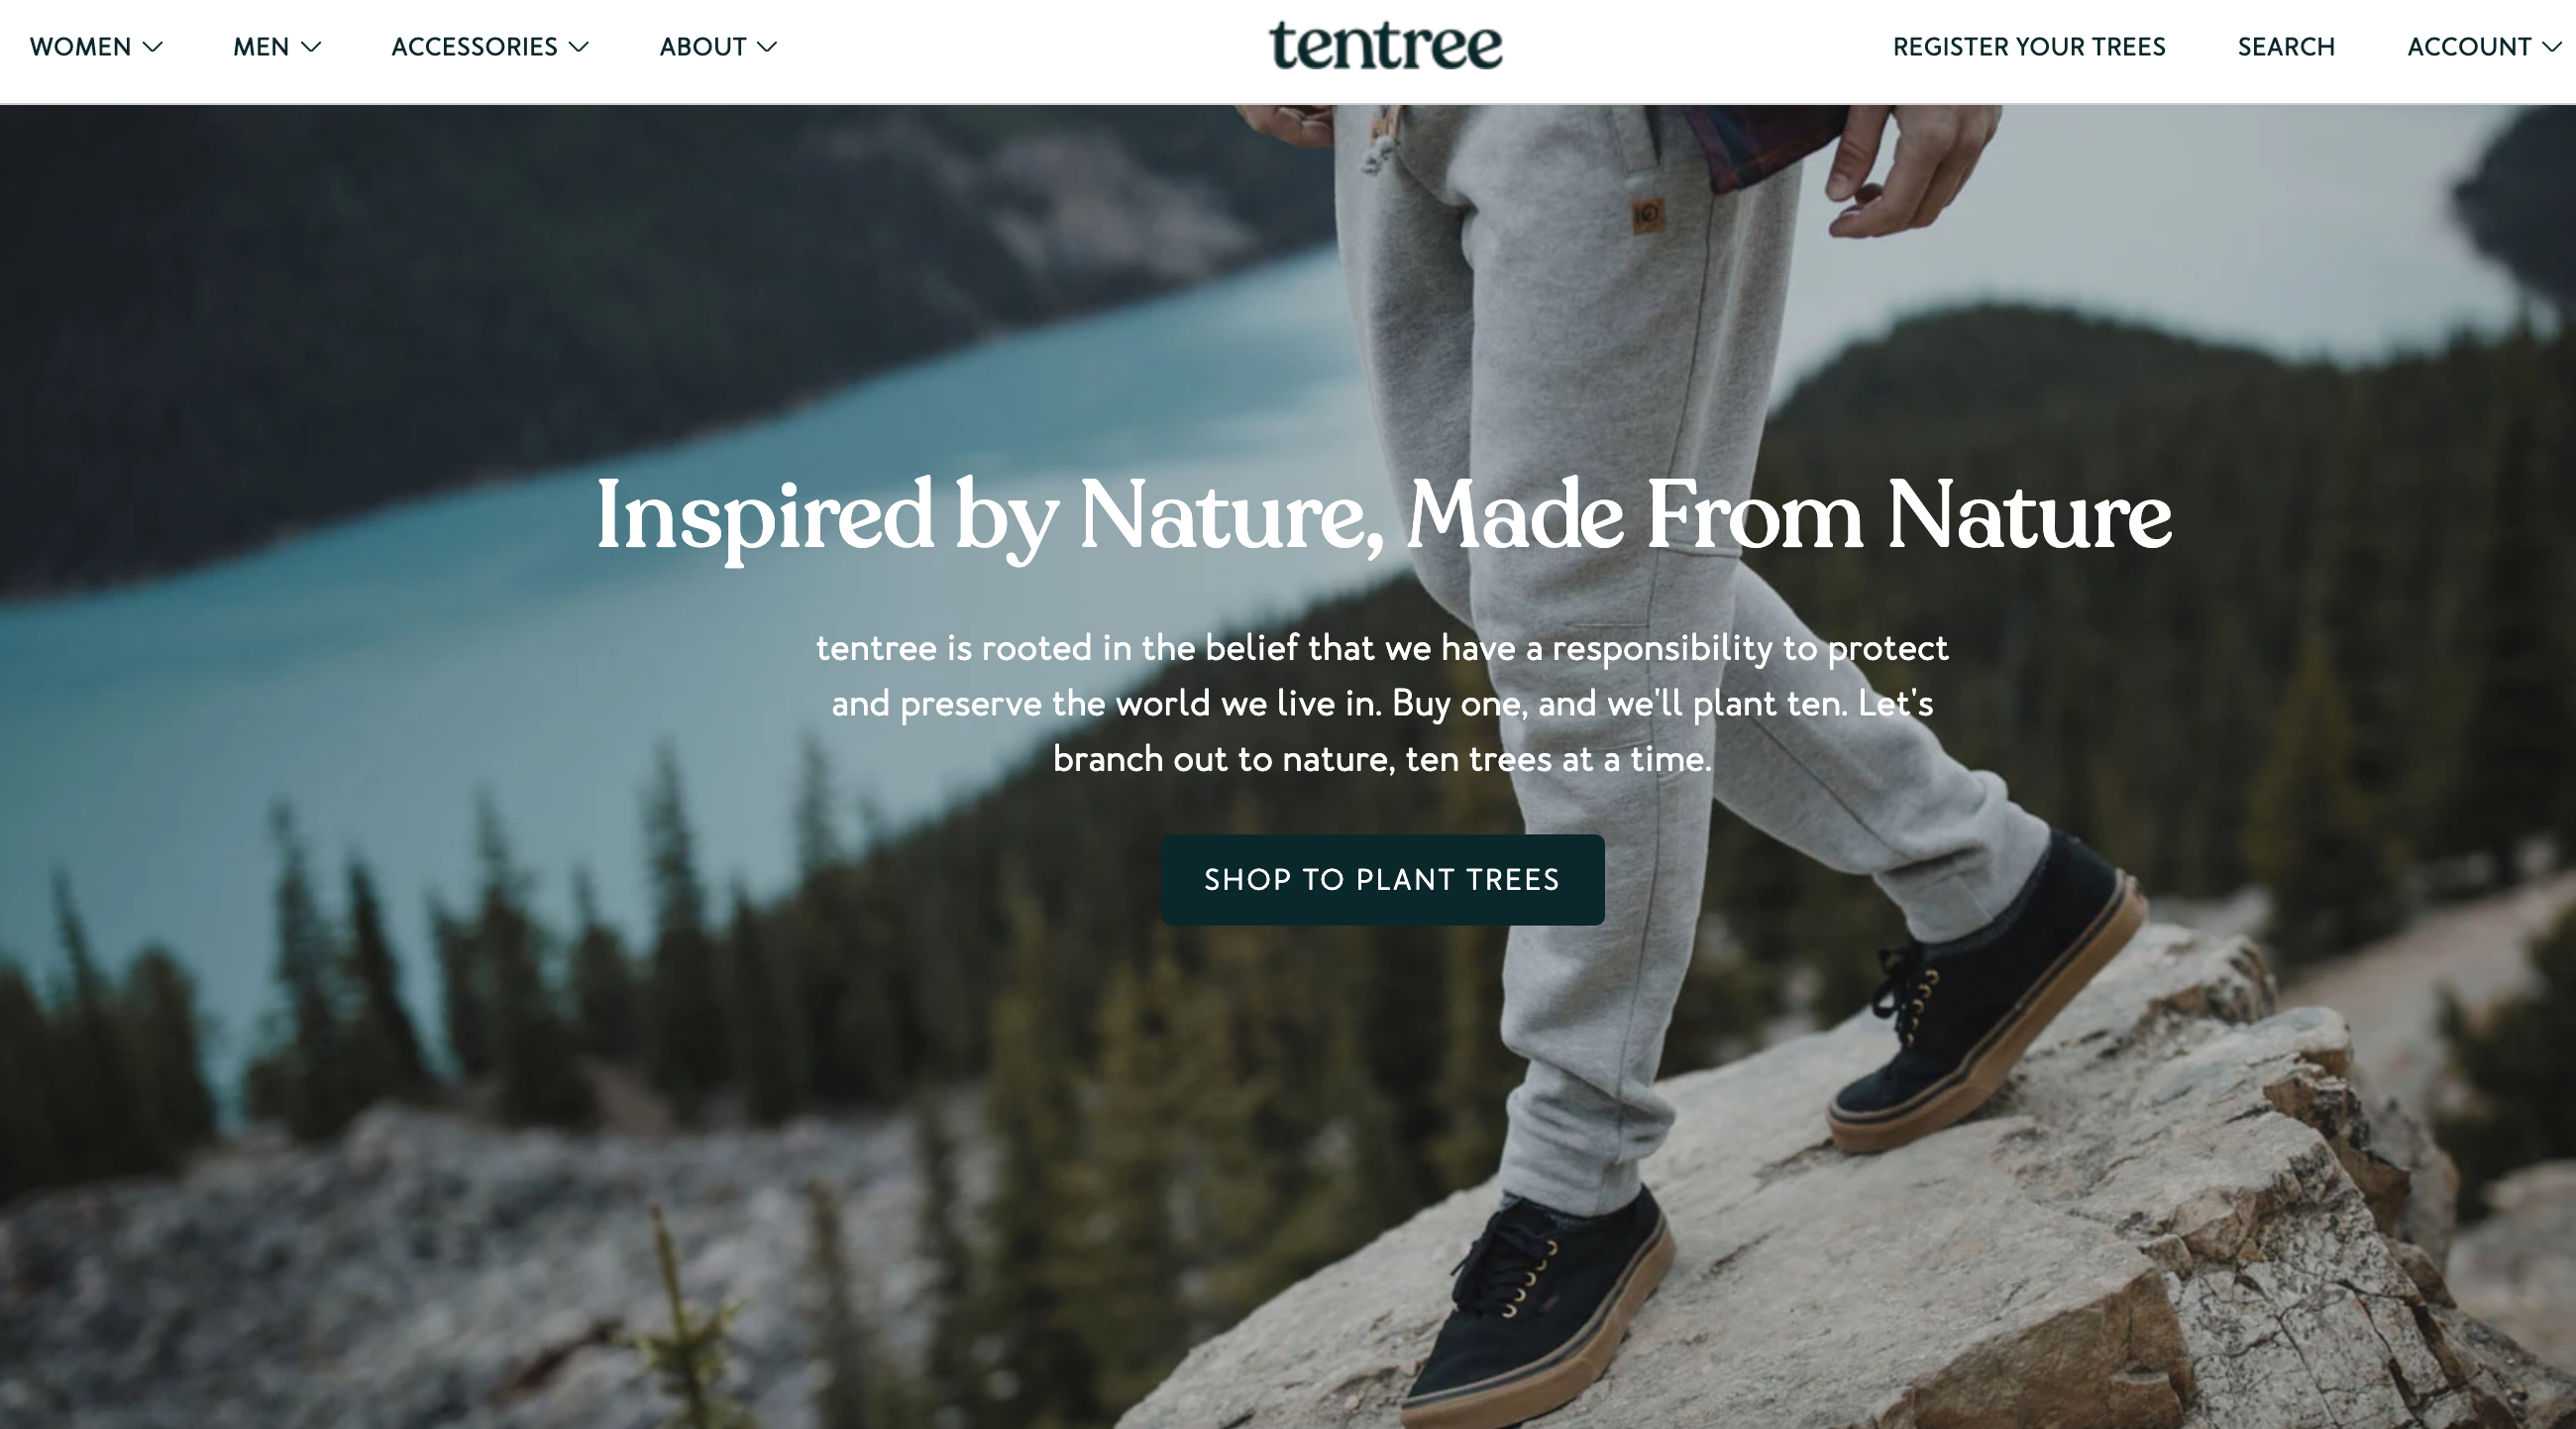 Tentree website